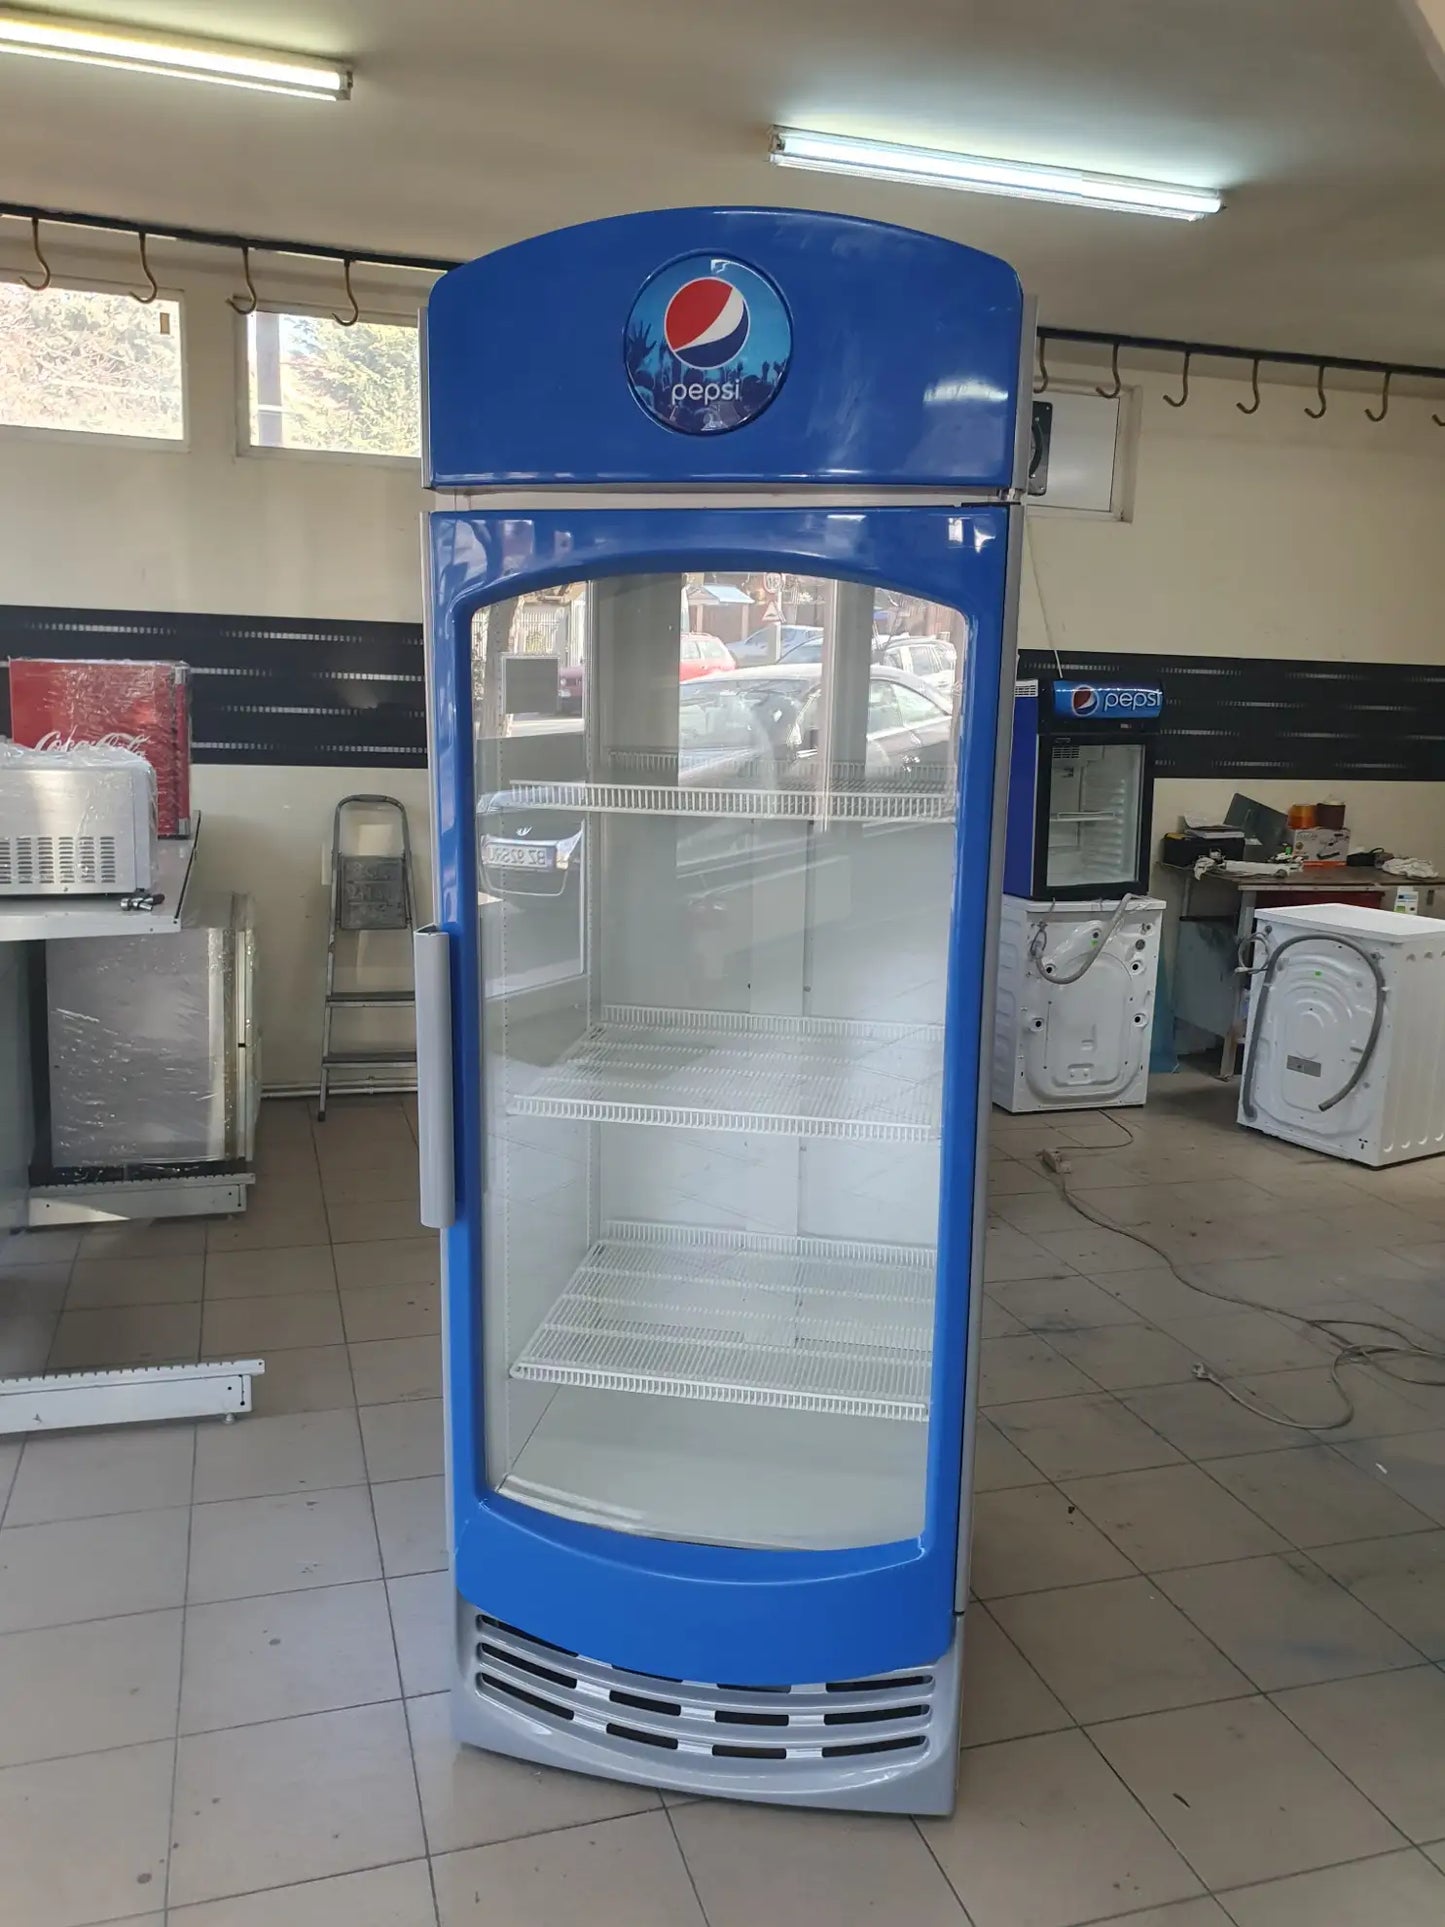 Vitrină frigorifică pentru băuturi, 76cm lățime, ventilație aer, panou comandă digital, iluminare LED